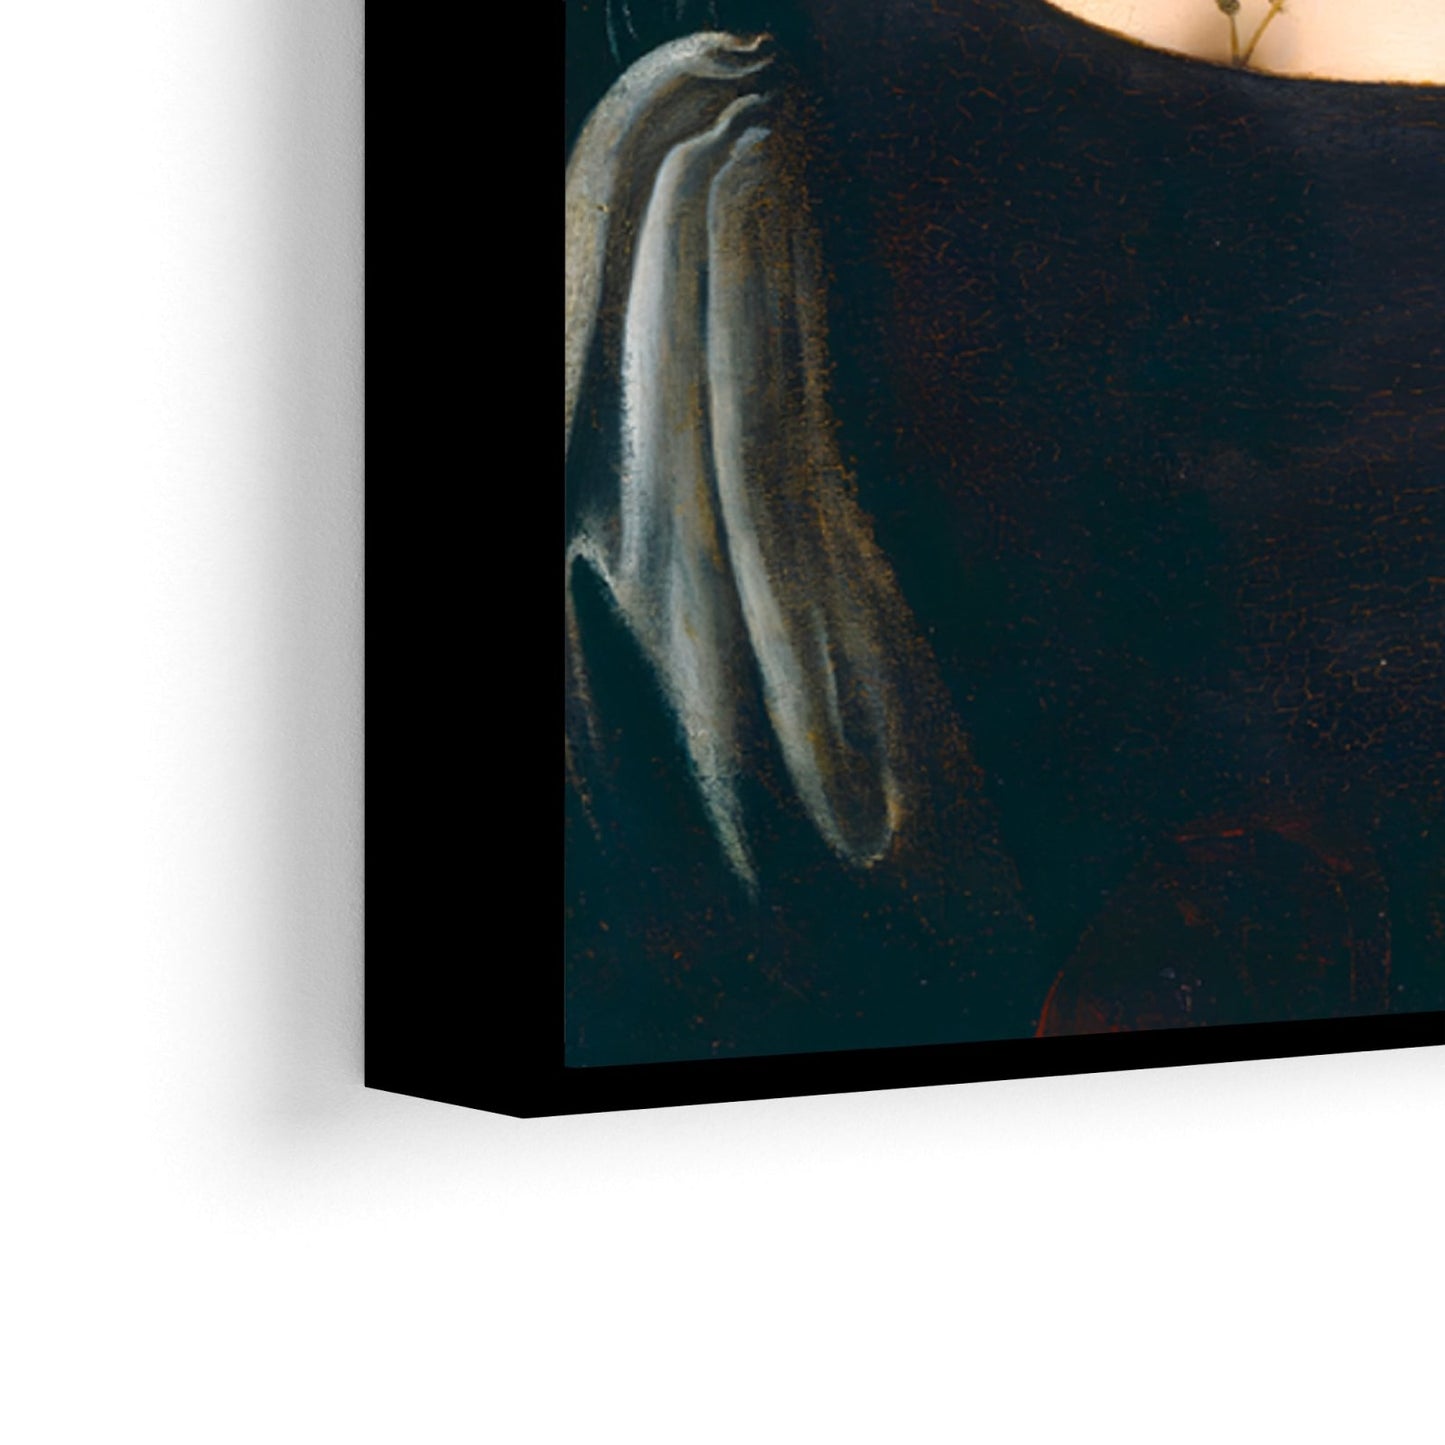 Portrait d'une jeune femme, Léonard de Vinci